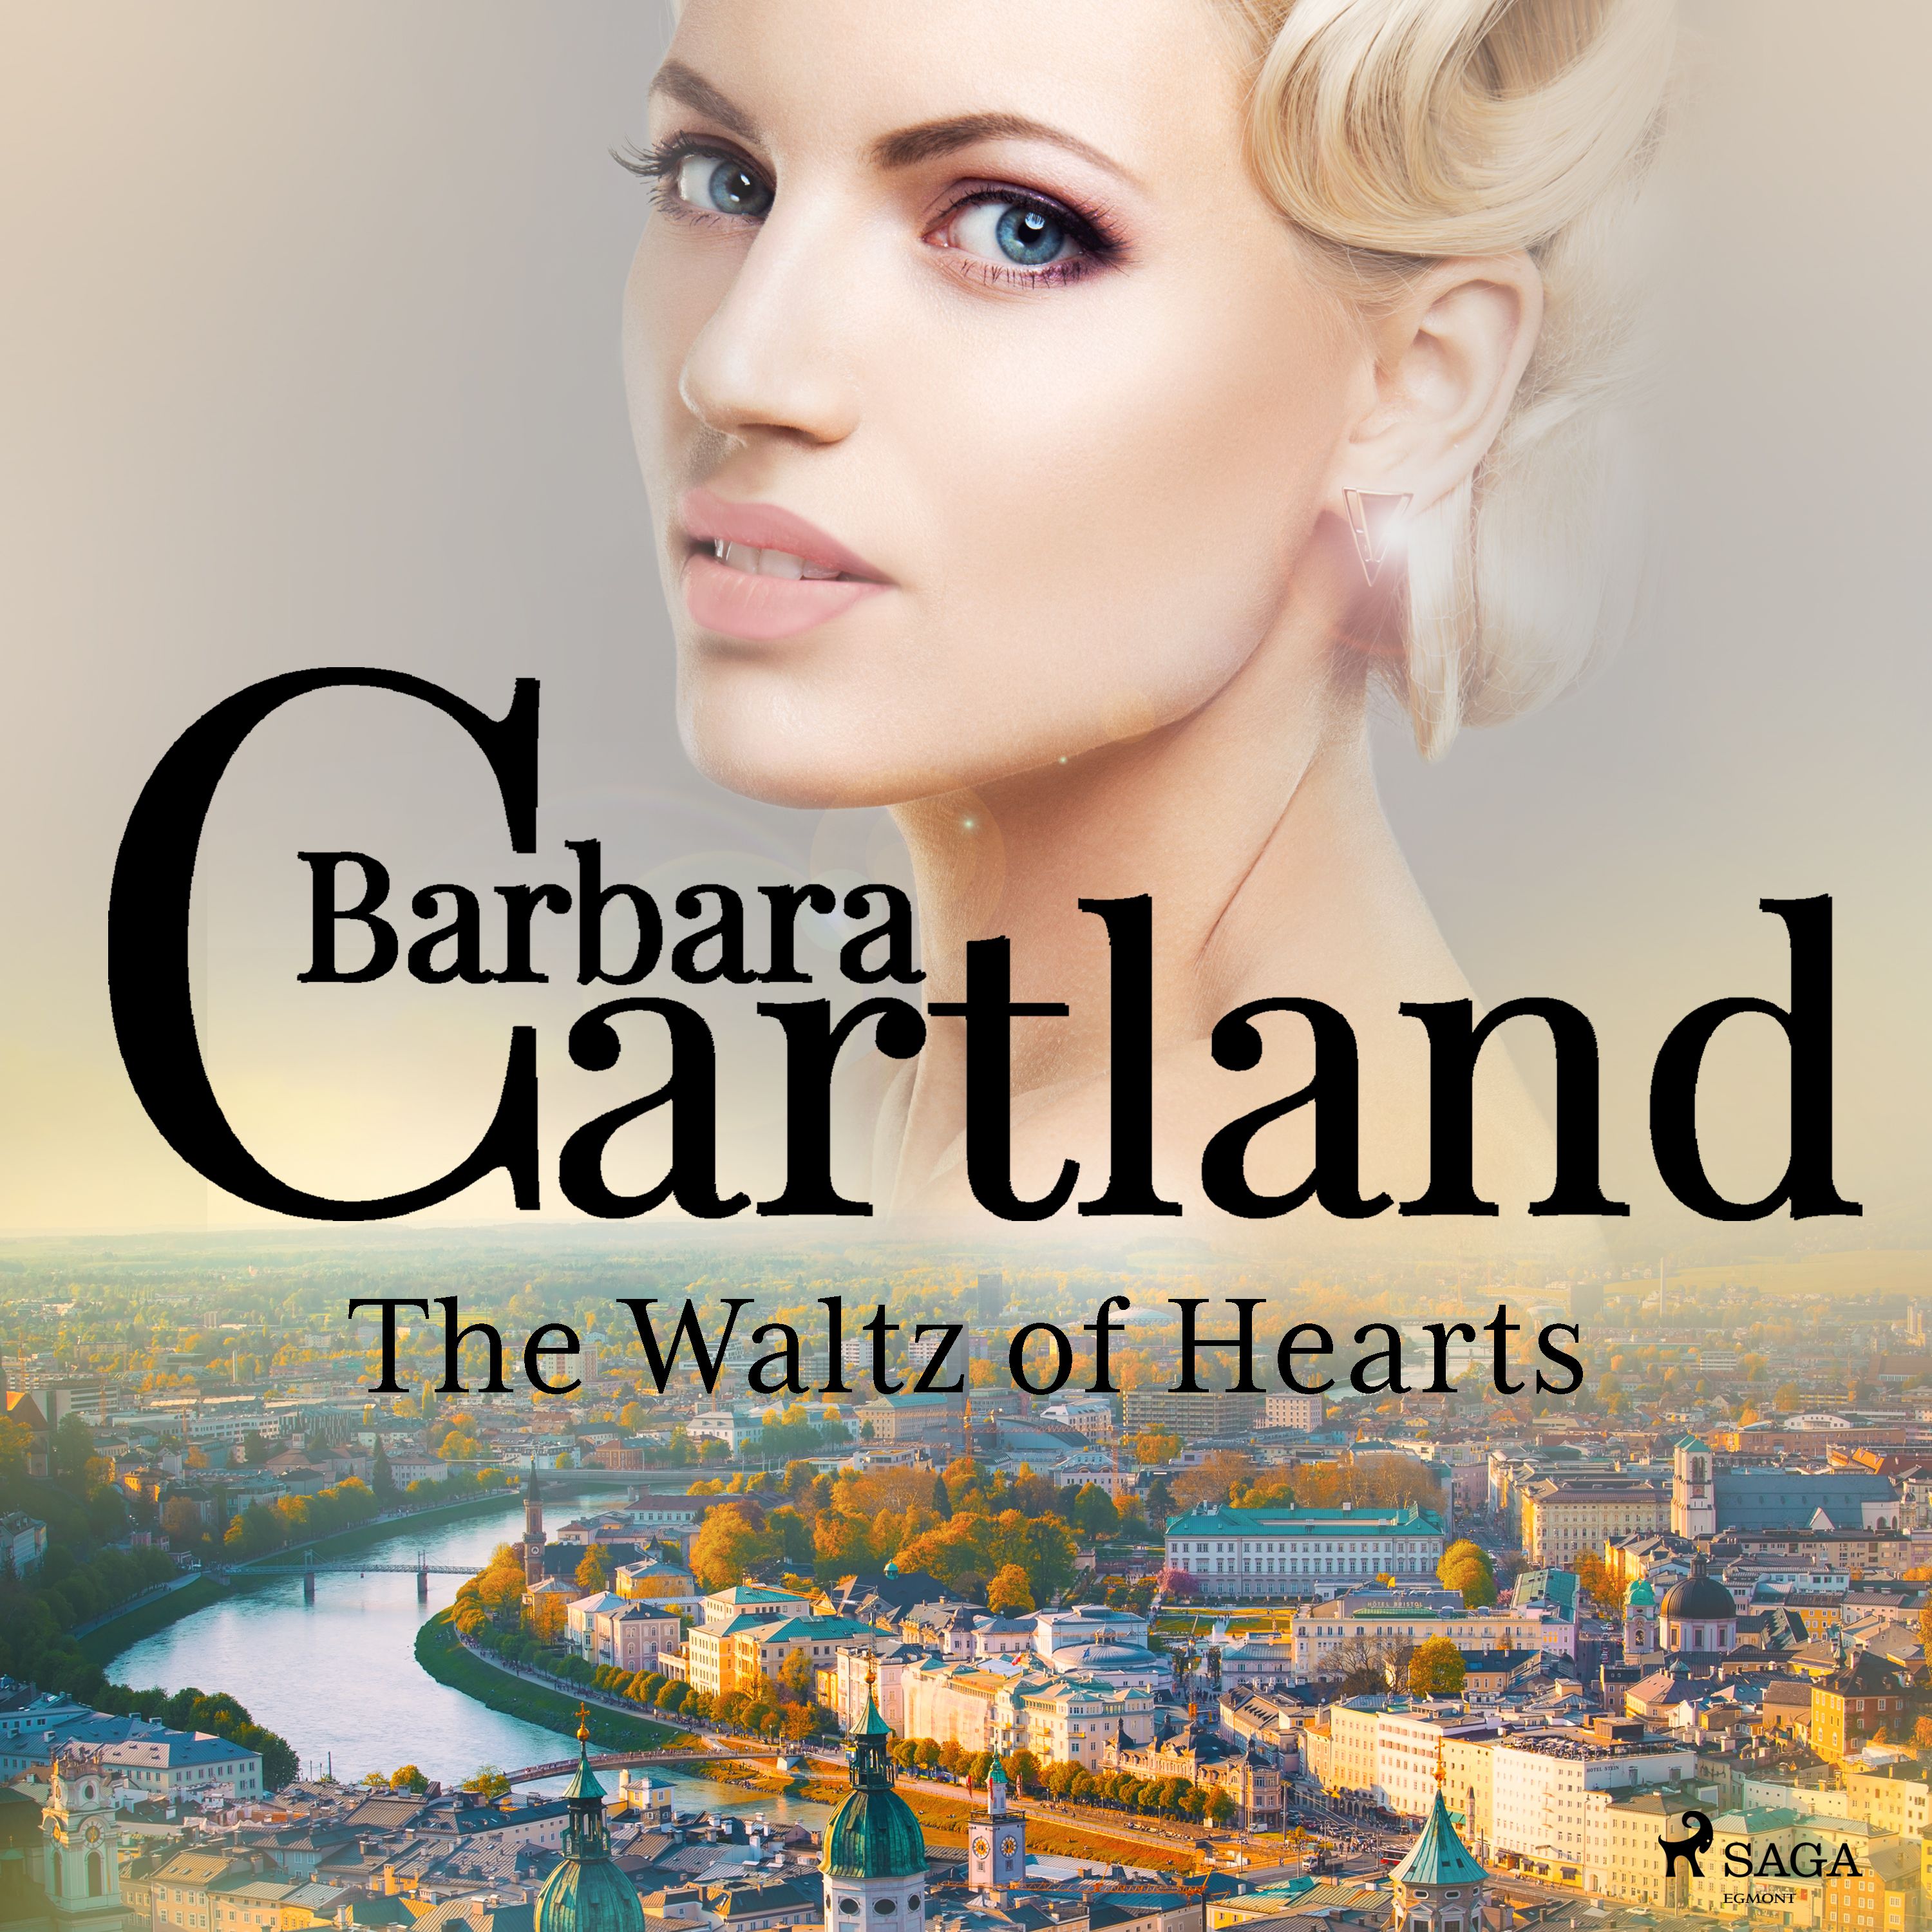 The Waltz of Hearts, ljudbok av Barbara Cartland